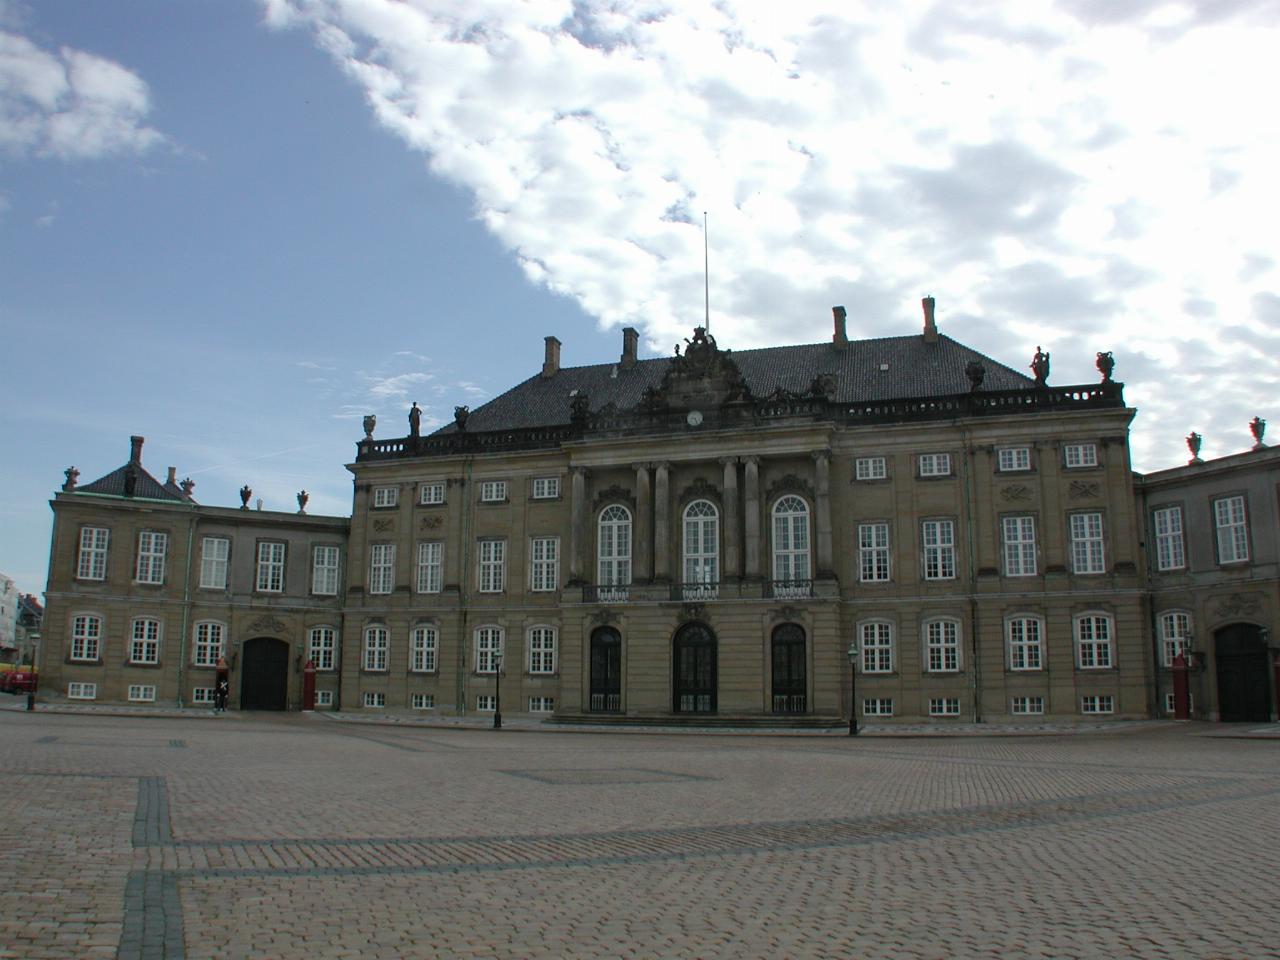 KPLU Viking Jazz: Amelienborg Plads (Plaza): Frederick VIII's Palace (panorama 1/4)